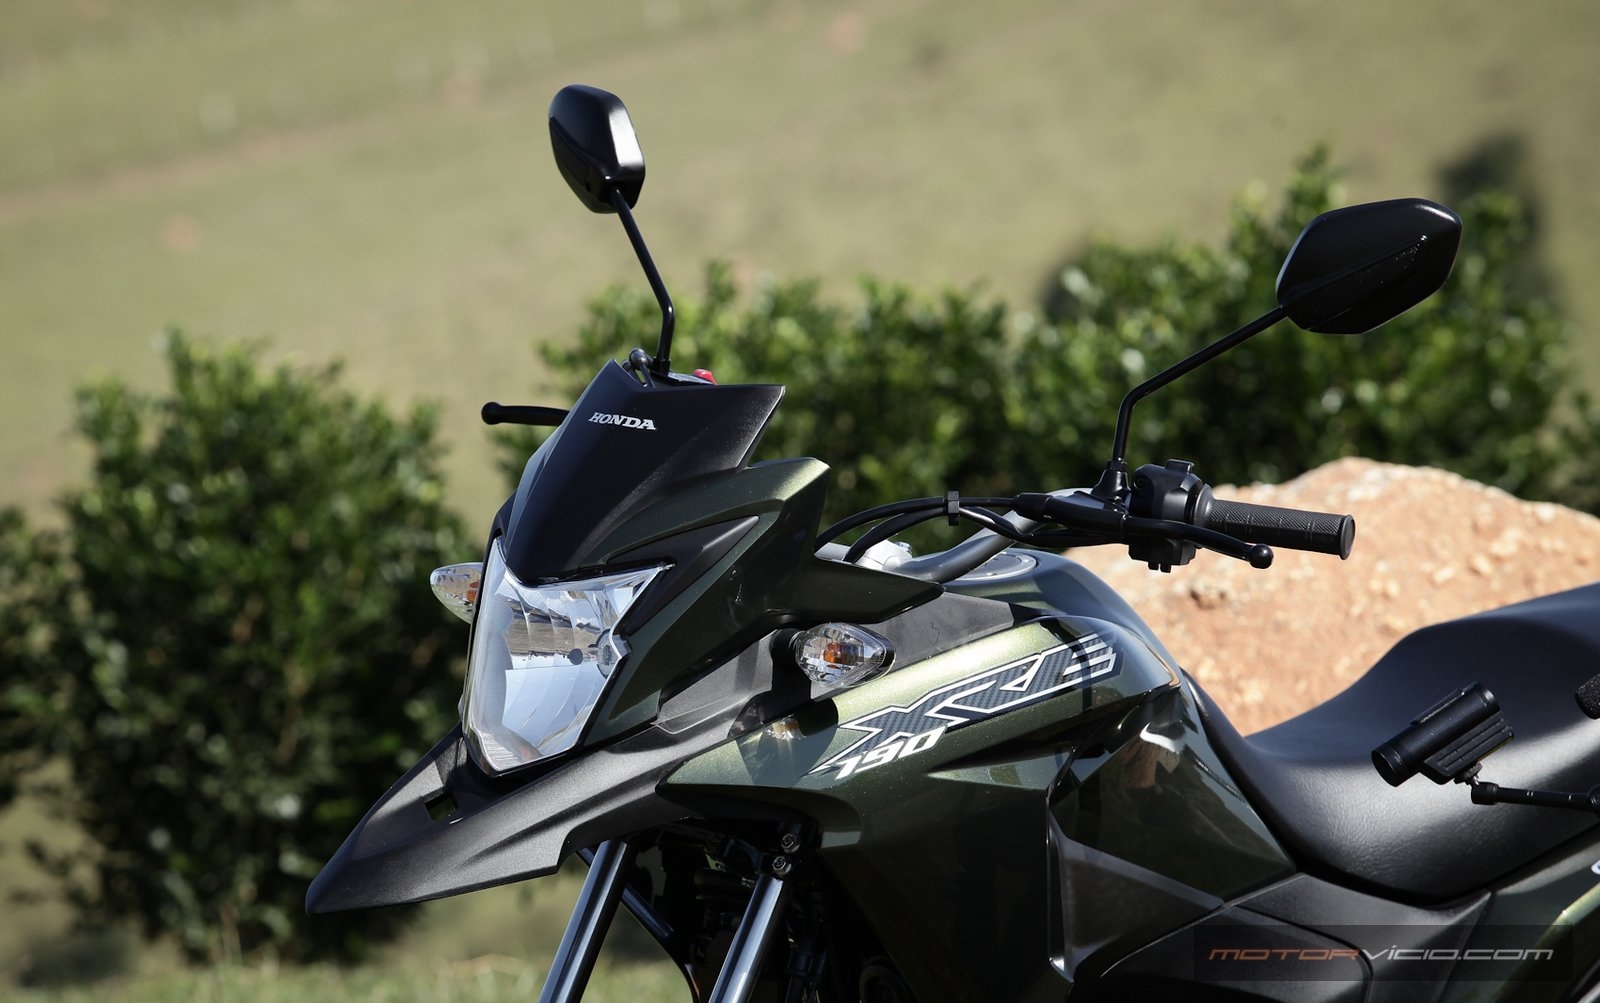 Trail: Honda lança XRE 190 por R$ 13.300 - Autos Segredos